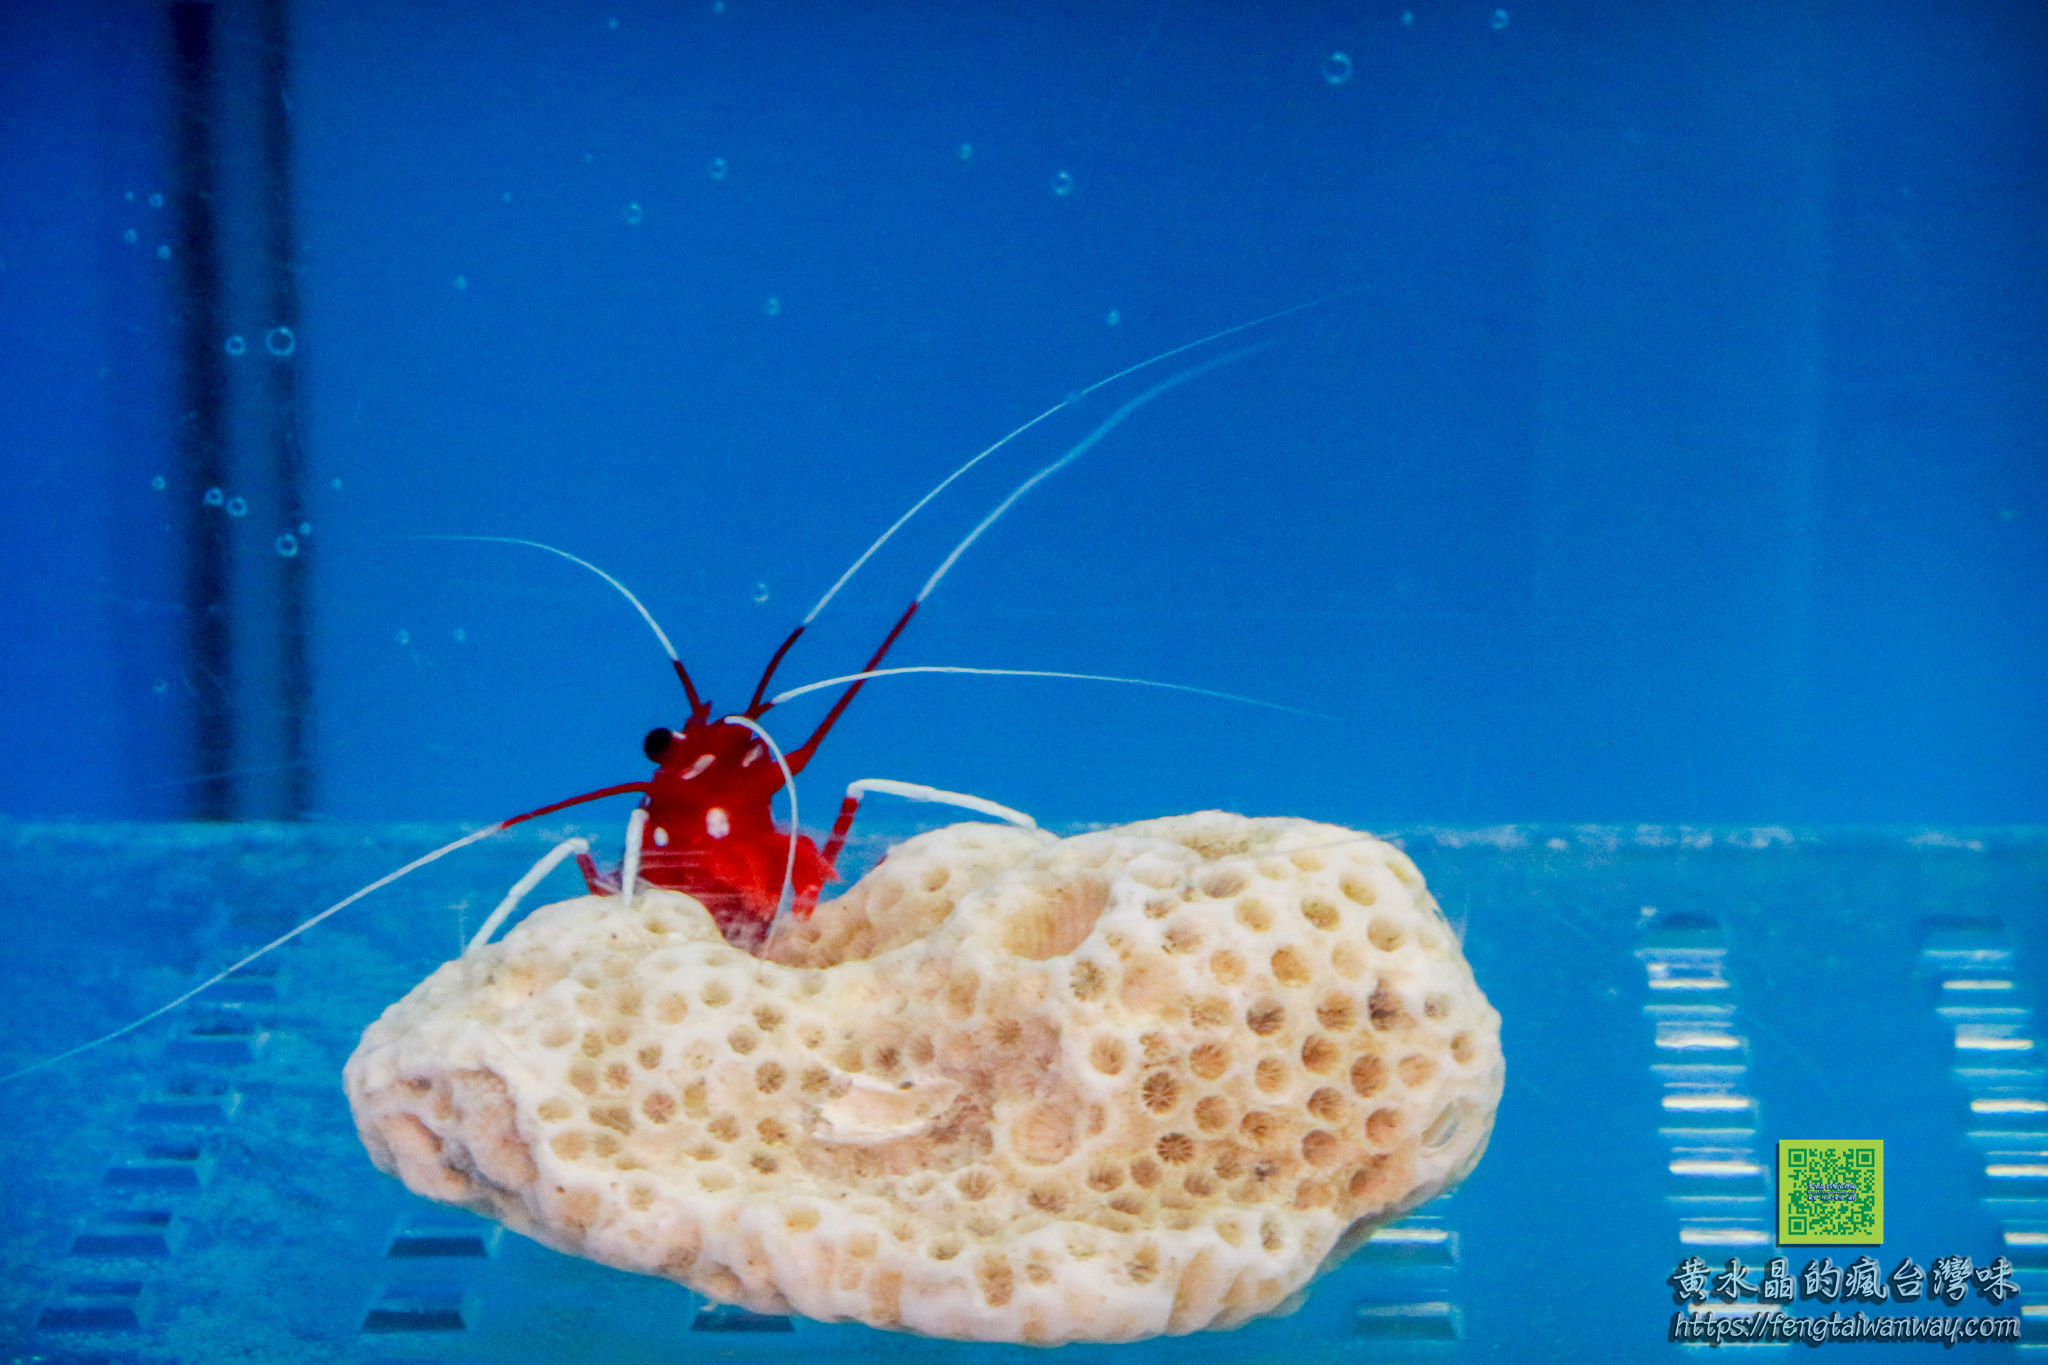 竹灣螃蟹博物館【澎湖景點】|西嶼親子景點；四百種來自世界各地的螃蟹蝦子活體及標本